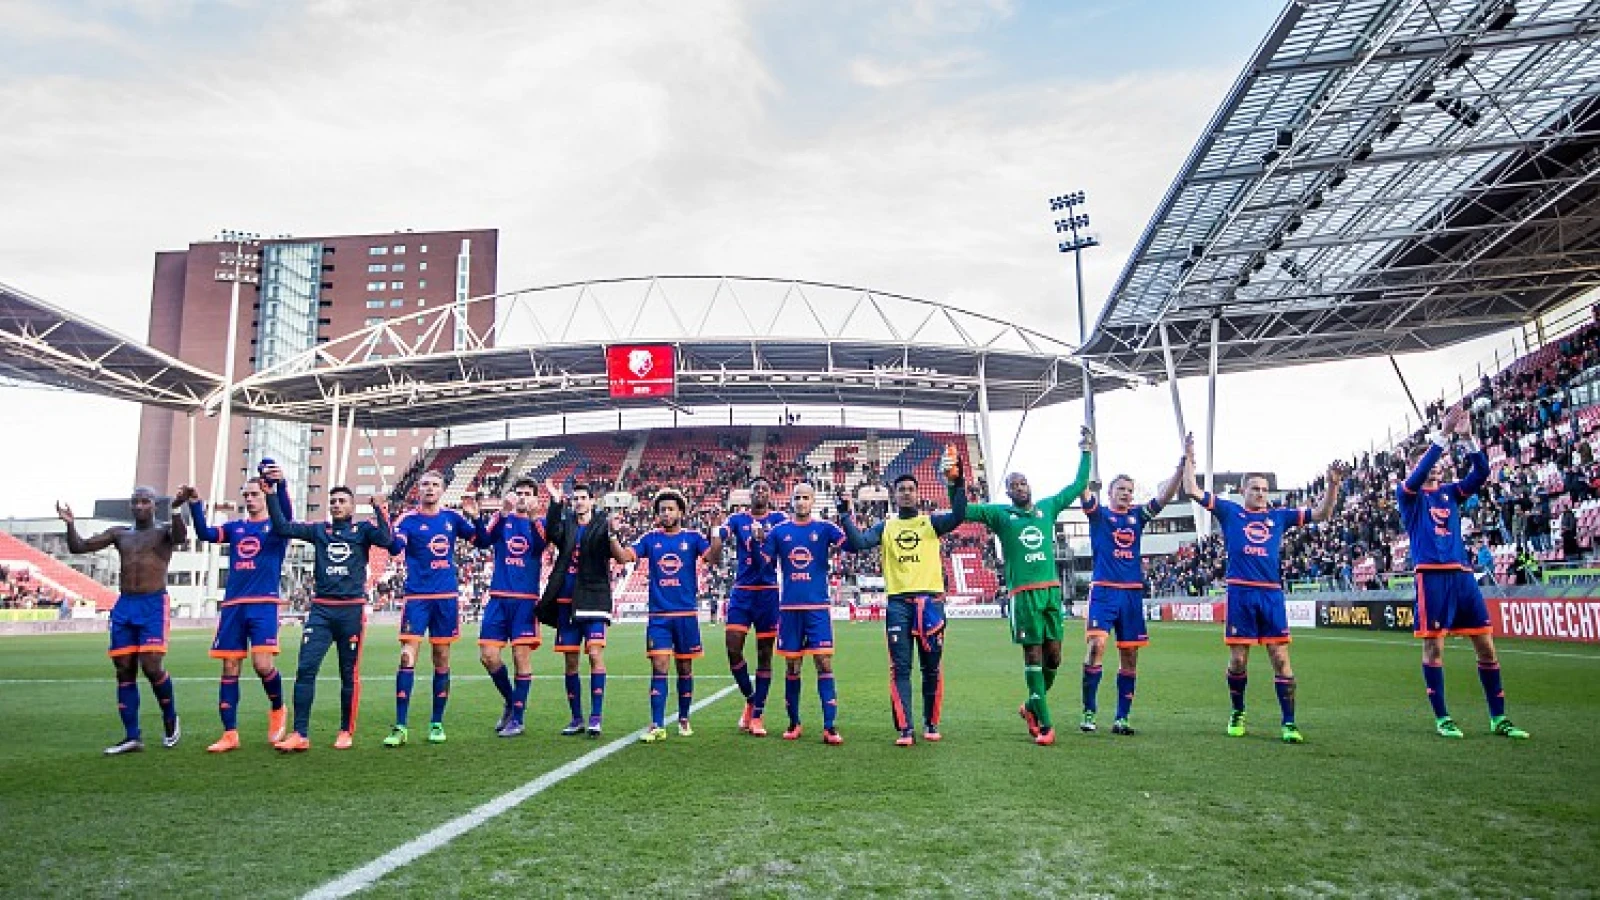 VIDEO | Spelers Feyenoord vieren overwinning met bomvol uitvak